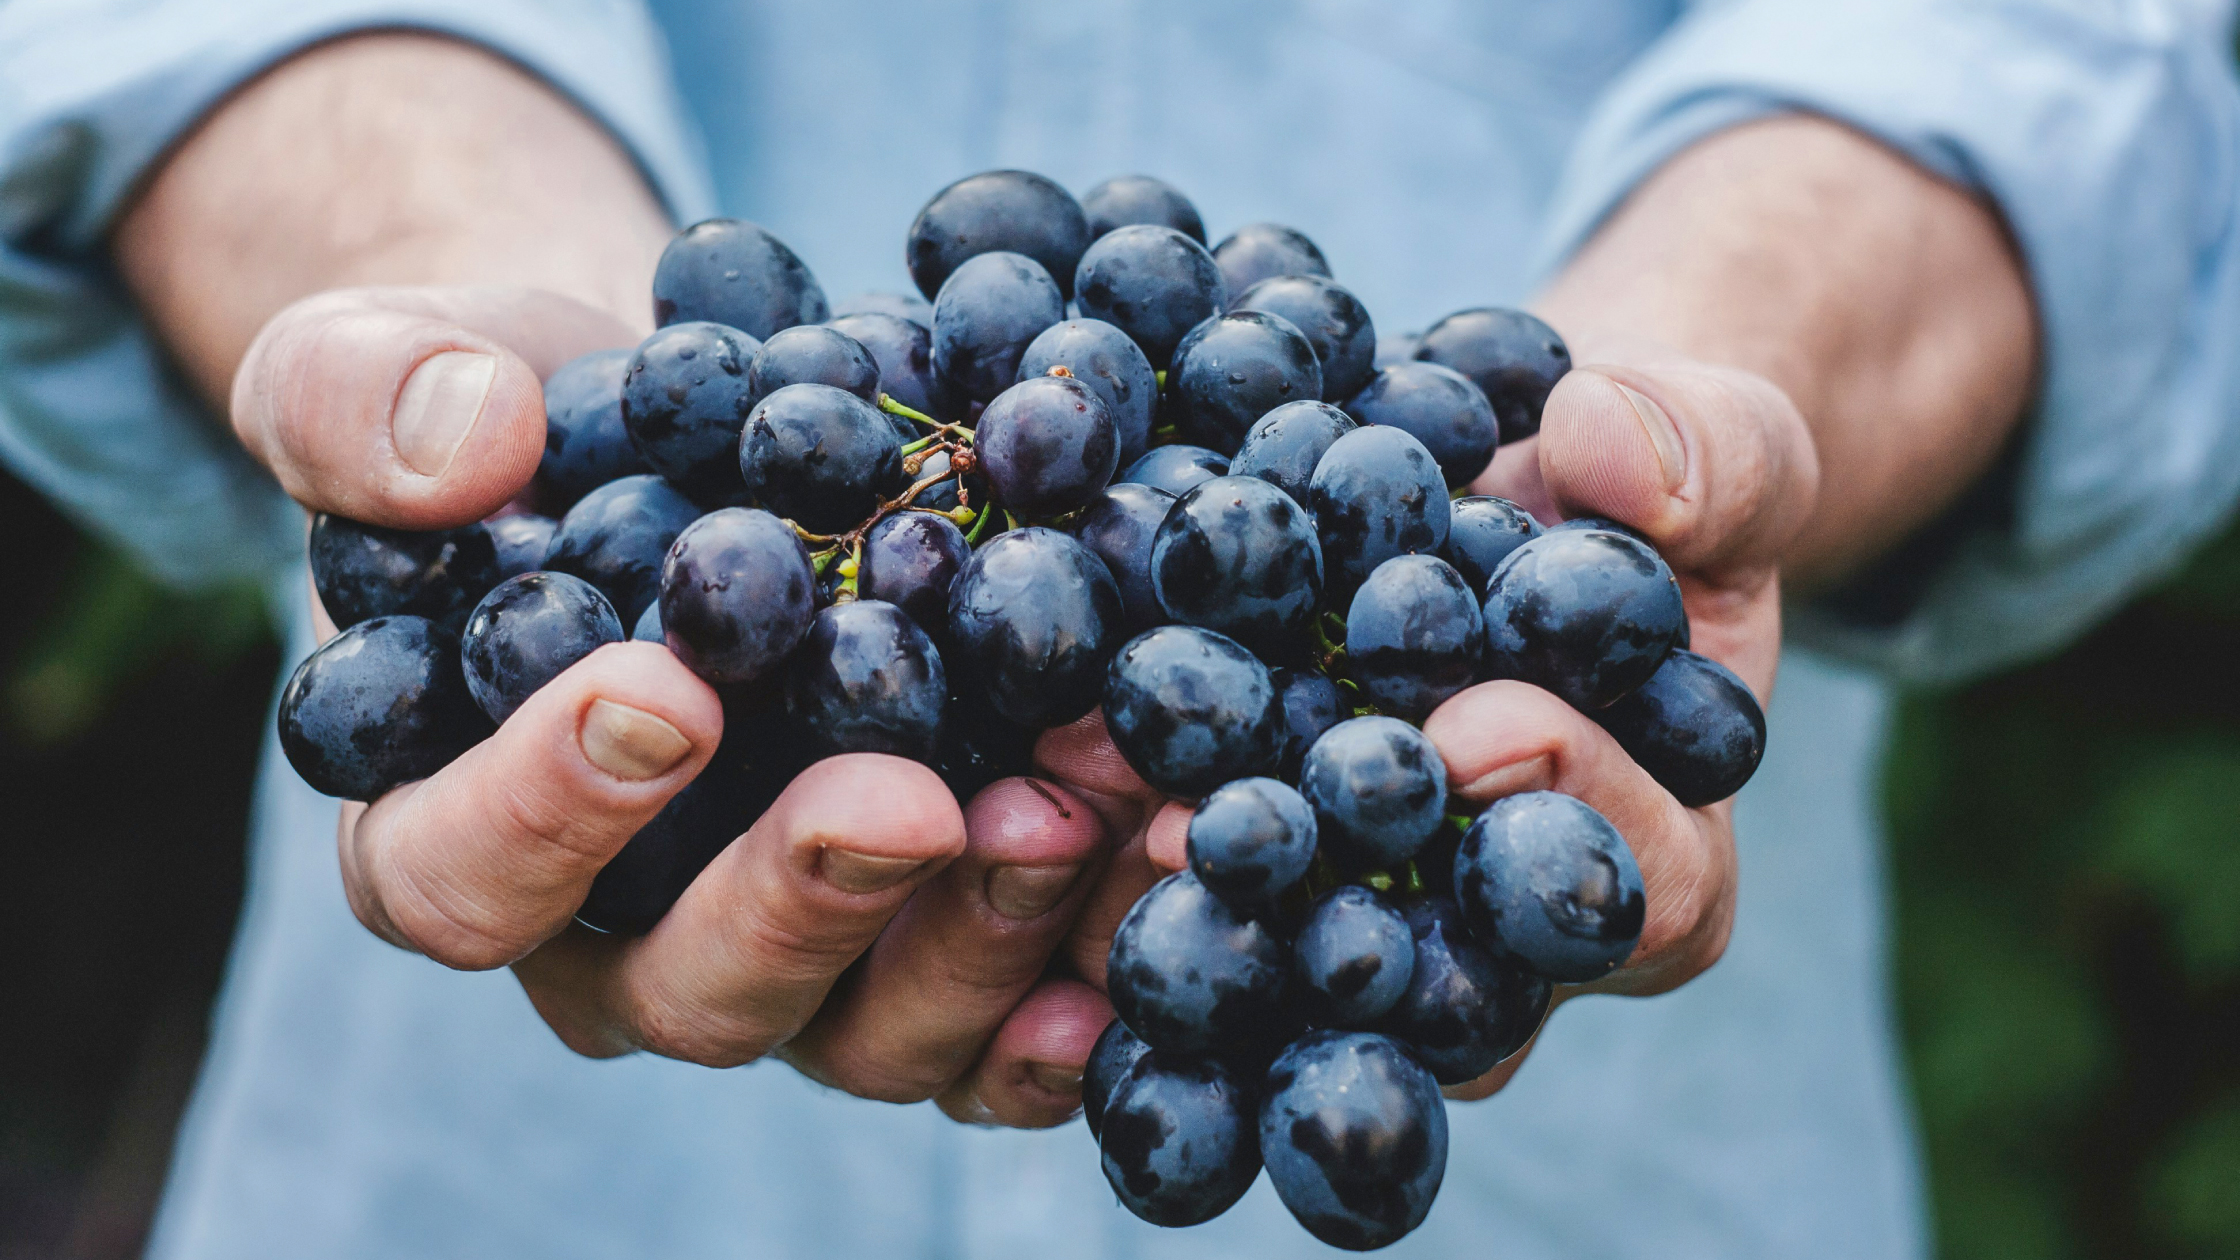 Tesoros de la naturaleza: los beneficios biológicos de la semilla de uva